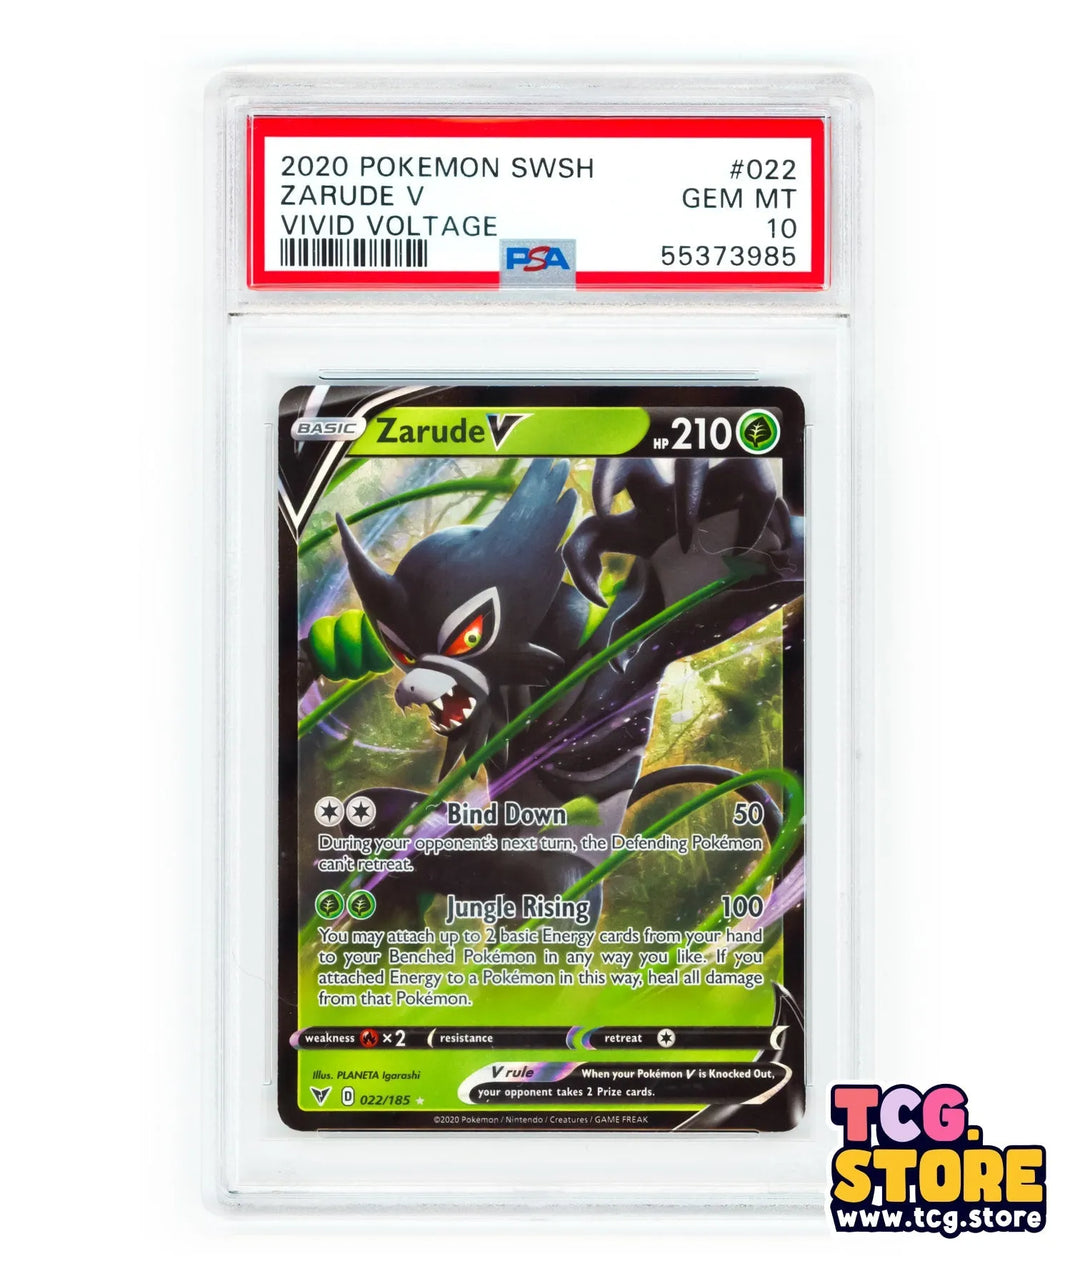 2020 - Pokemon Vivid Voltage Zarude V 022/185 - Full Art - PSA 10